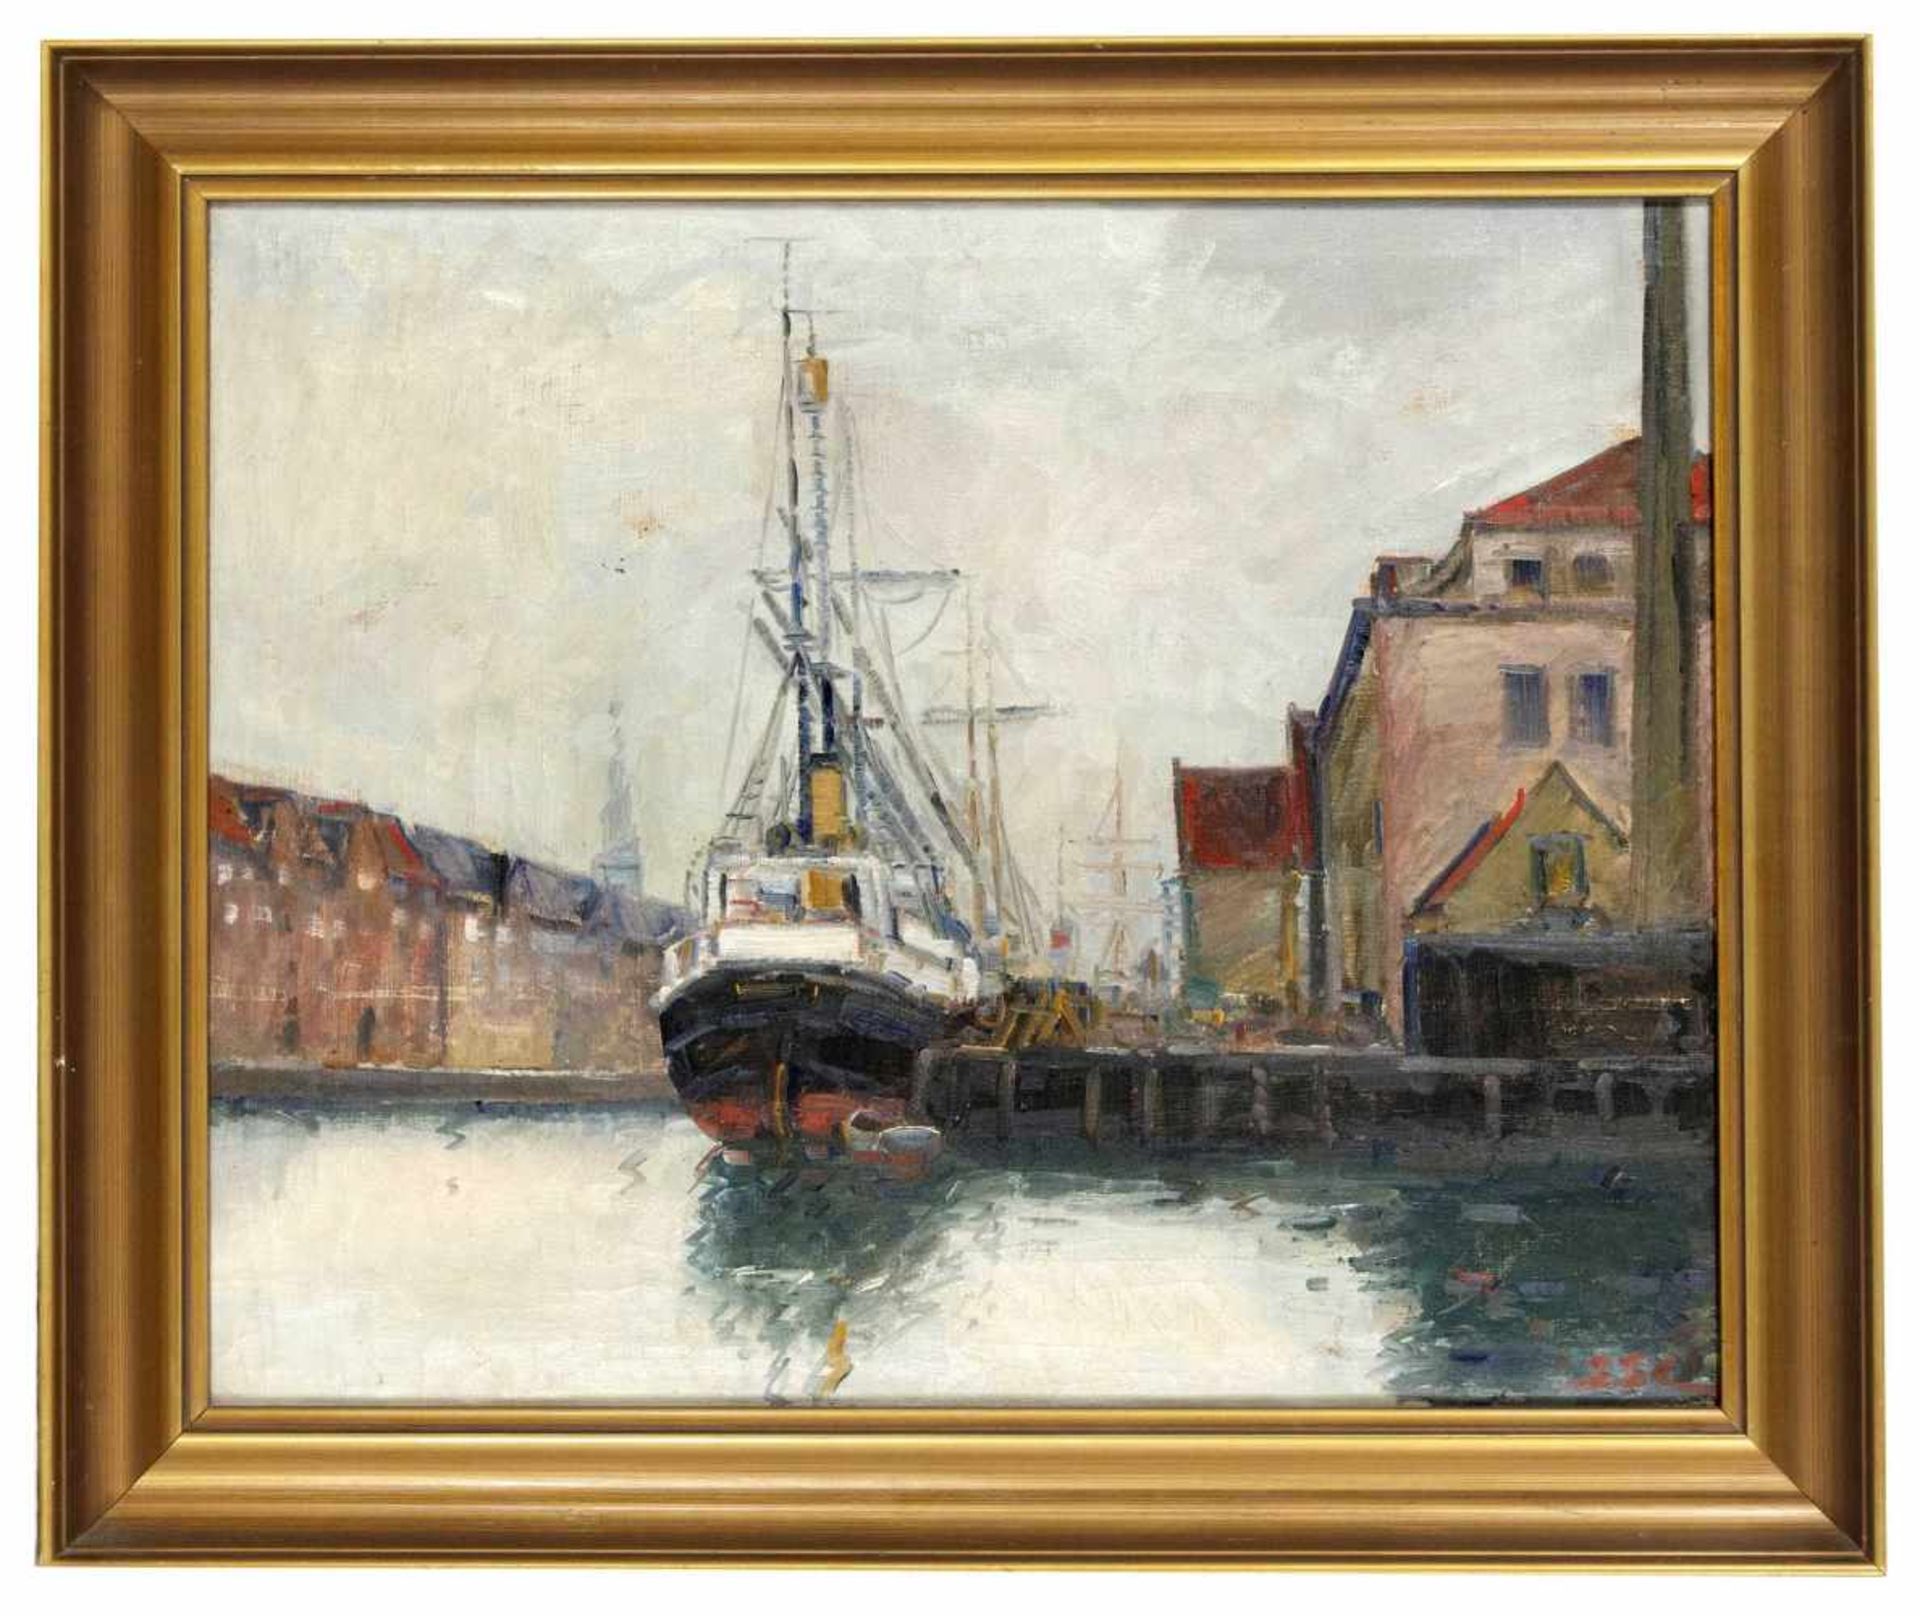 Marinemaler um 1900. Dampfsegler im Hafen. Öl/Lwd., u. re. monogr. SSL, 47 x 58 cm, ger.58 x 69,7 - Bild 2 aus 2